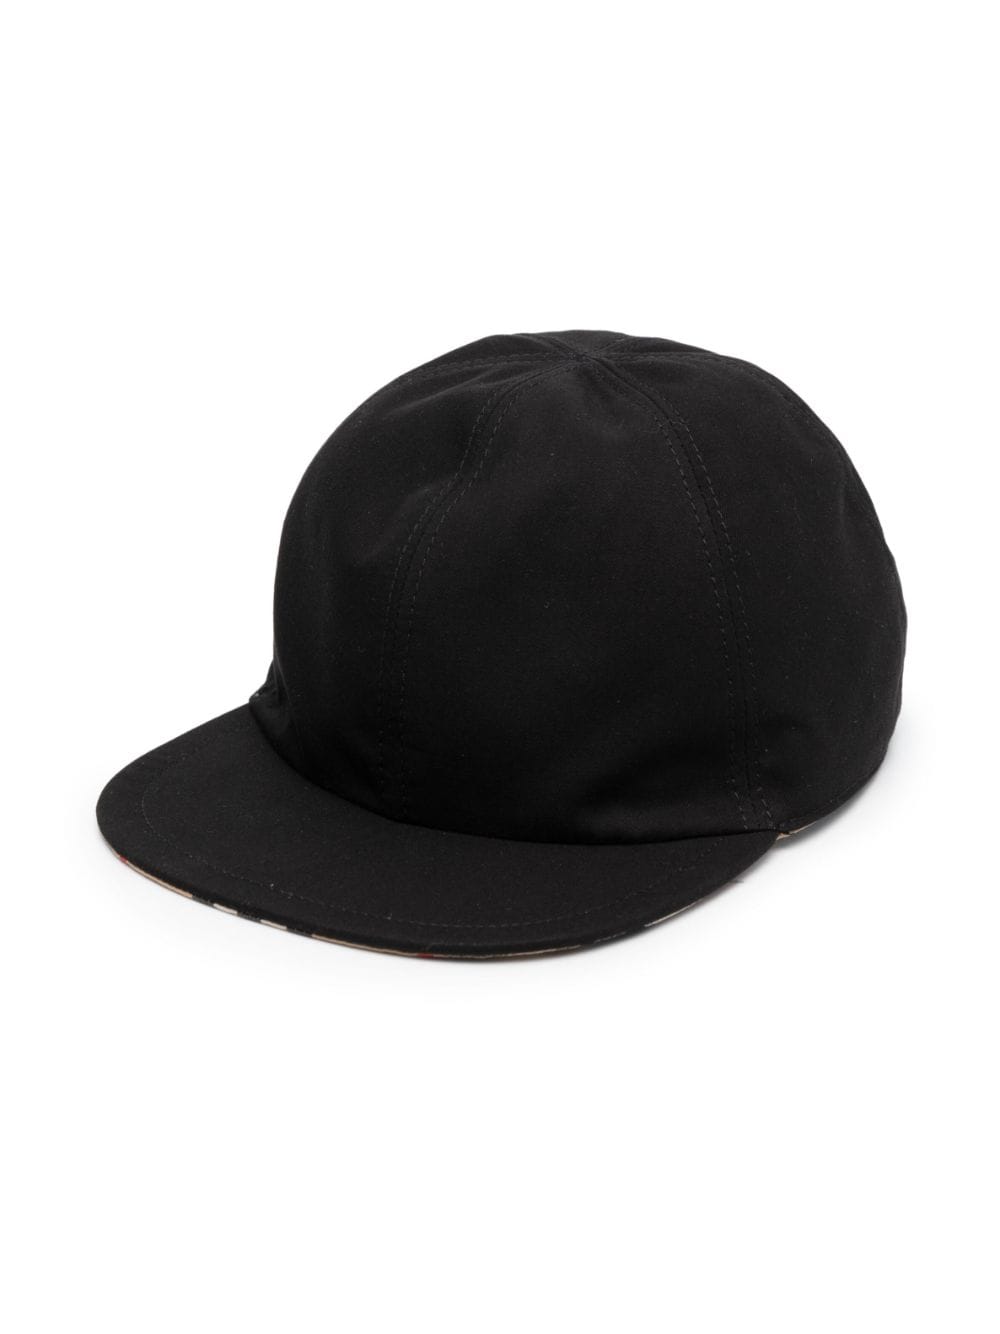 Reversible black cap for children